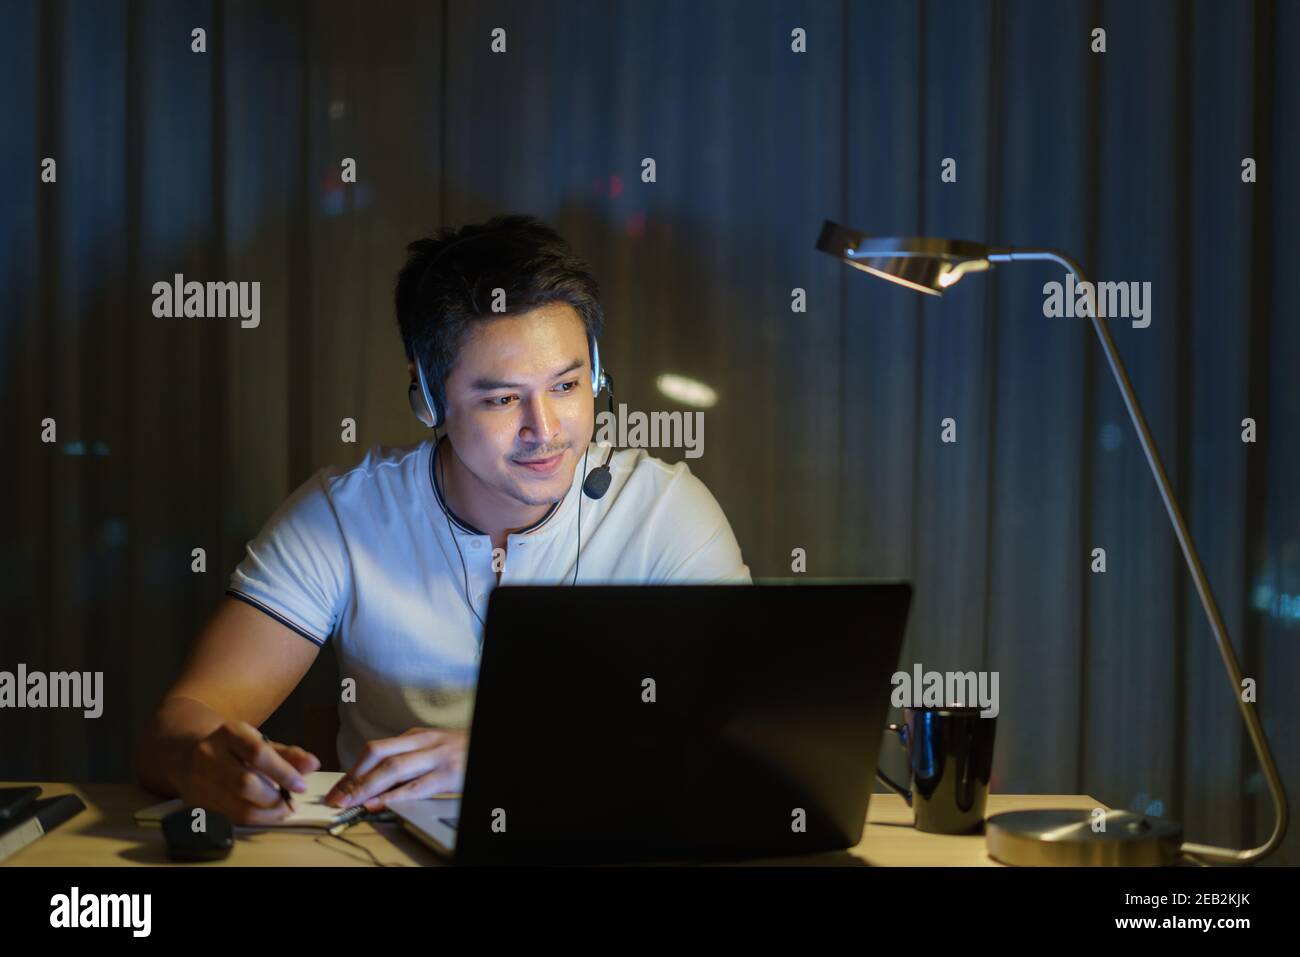 L'uomo asiatico lavora a casa è seduto al lavoro con colleghi o manager tramite videochiamata di notte a casa. Foto Stock